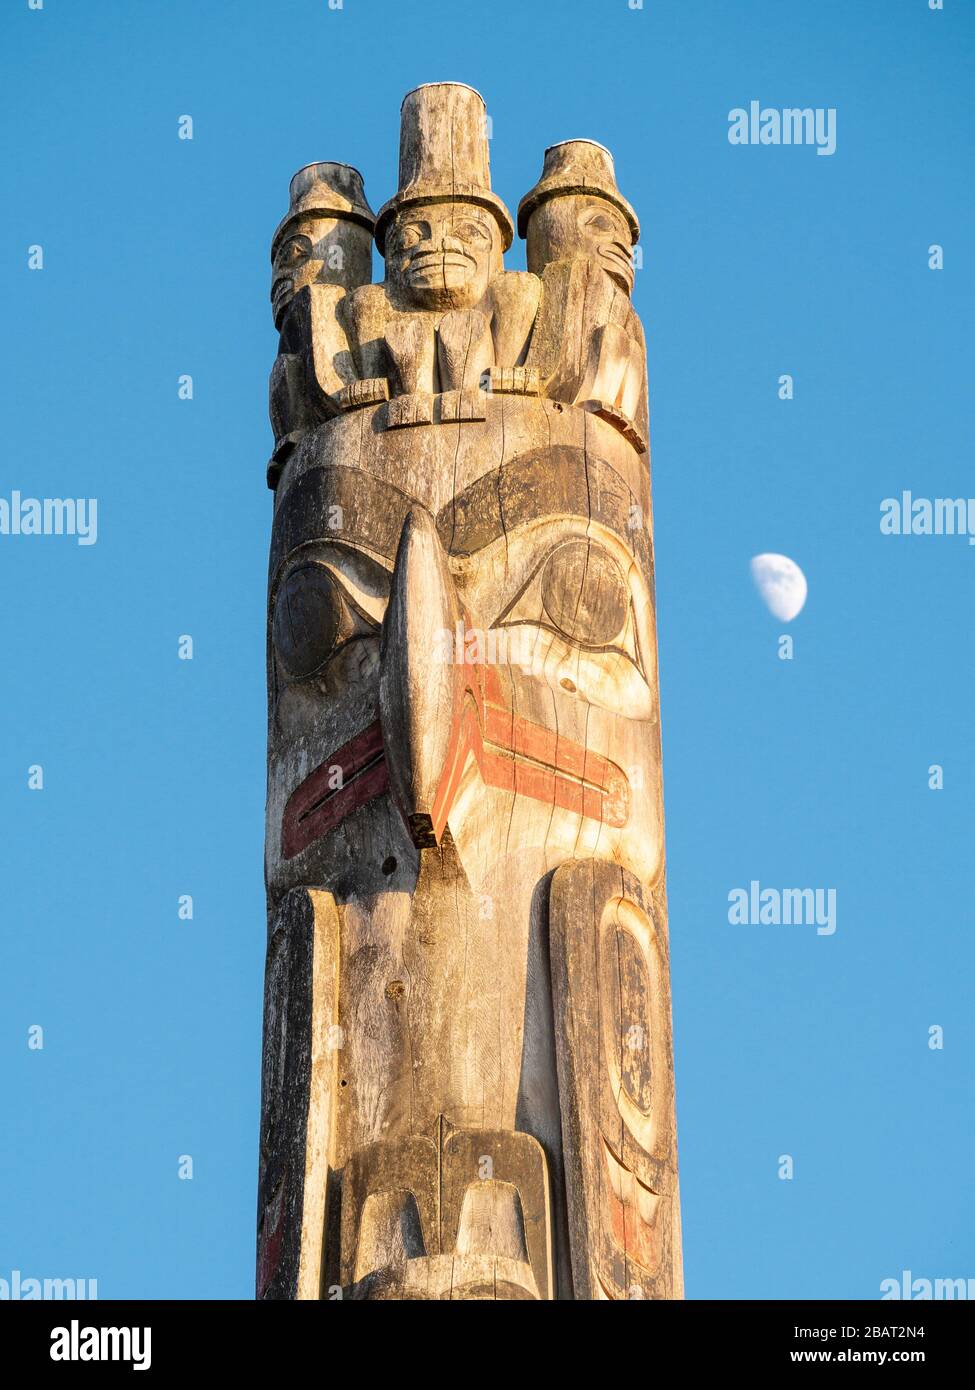 Totem pole al tramonto e moonrise: La cima di un grande totem scolpito della costa occidentale in mostra al Museo UBC di Antropologia contro un cielo blu. Foto Stock